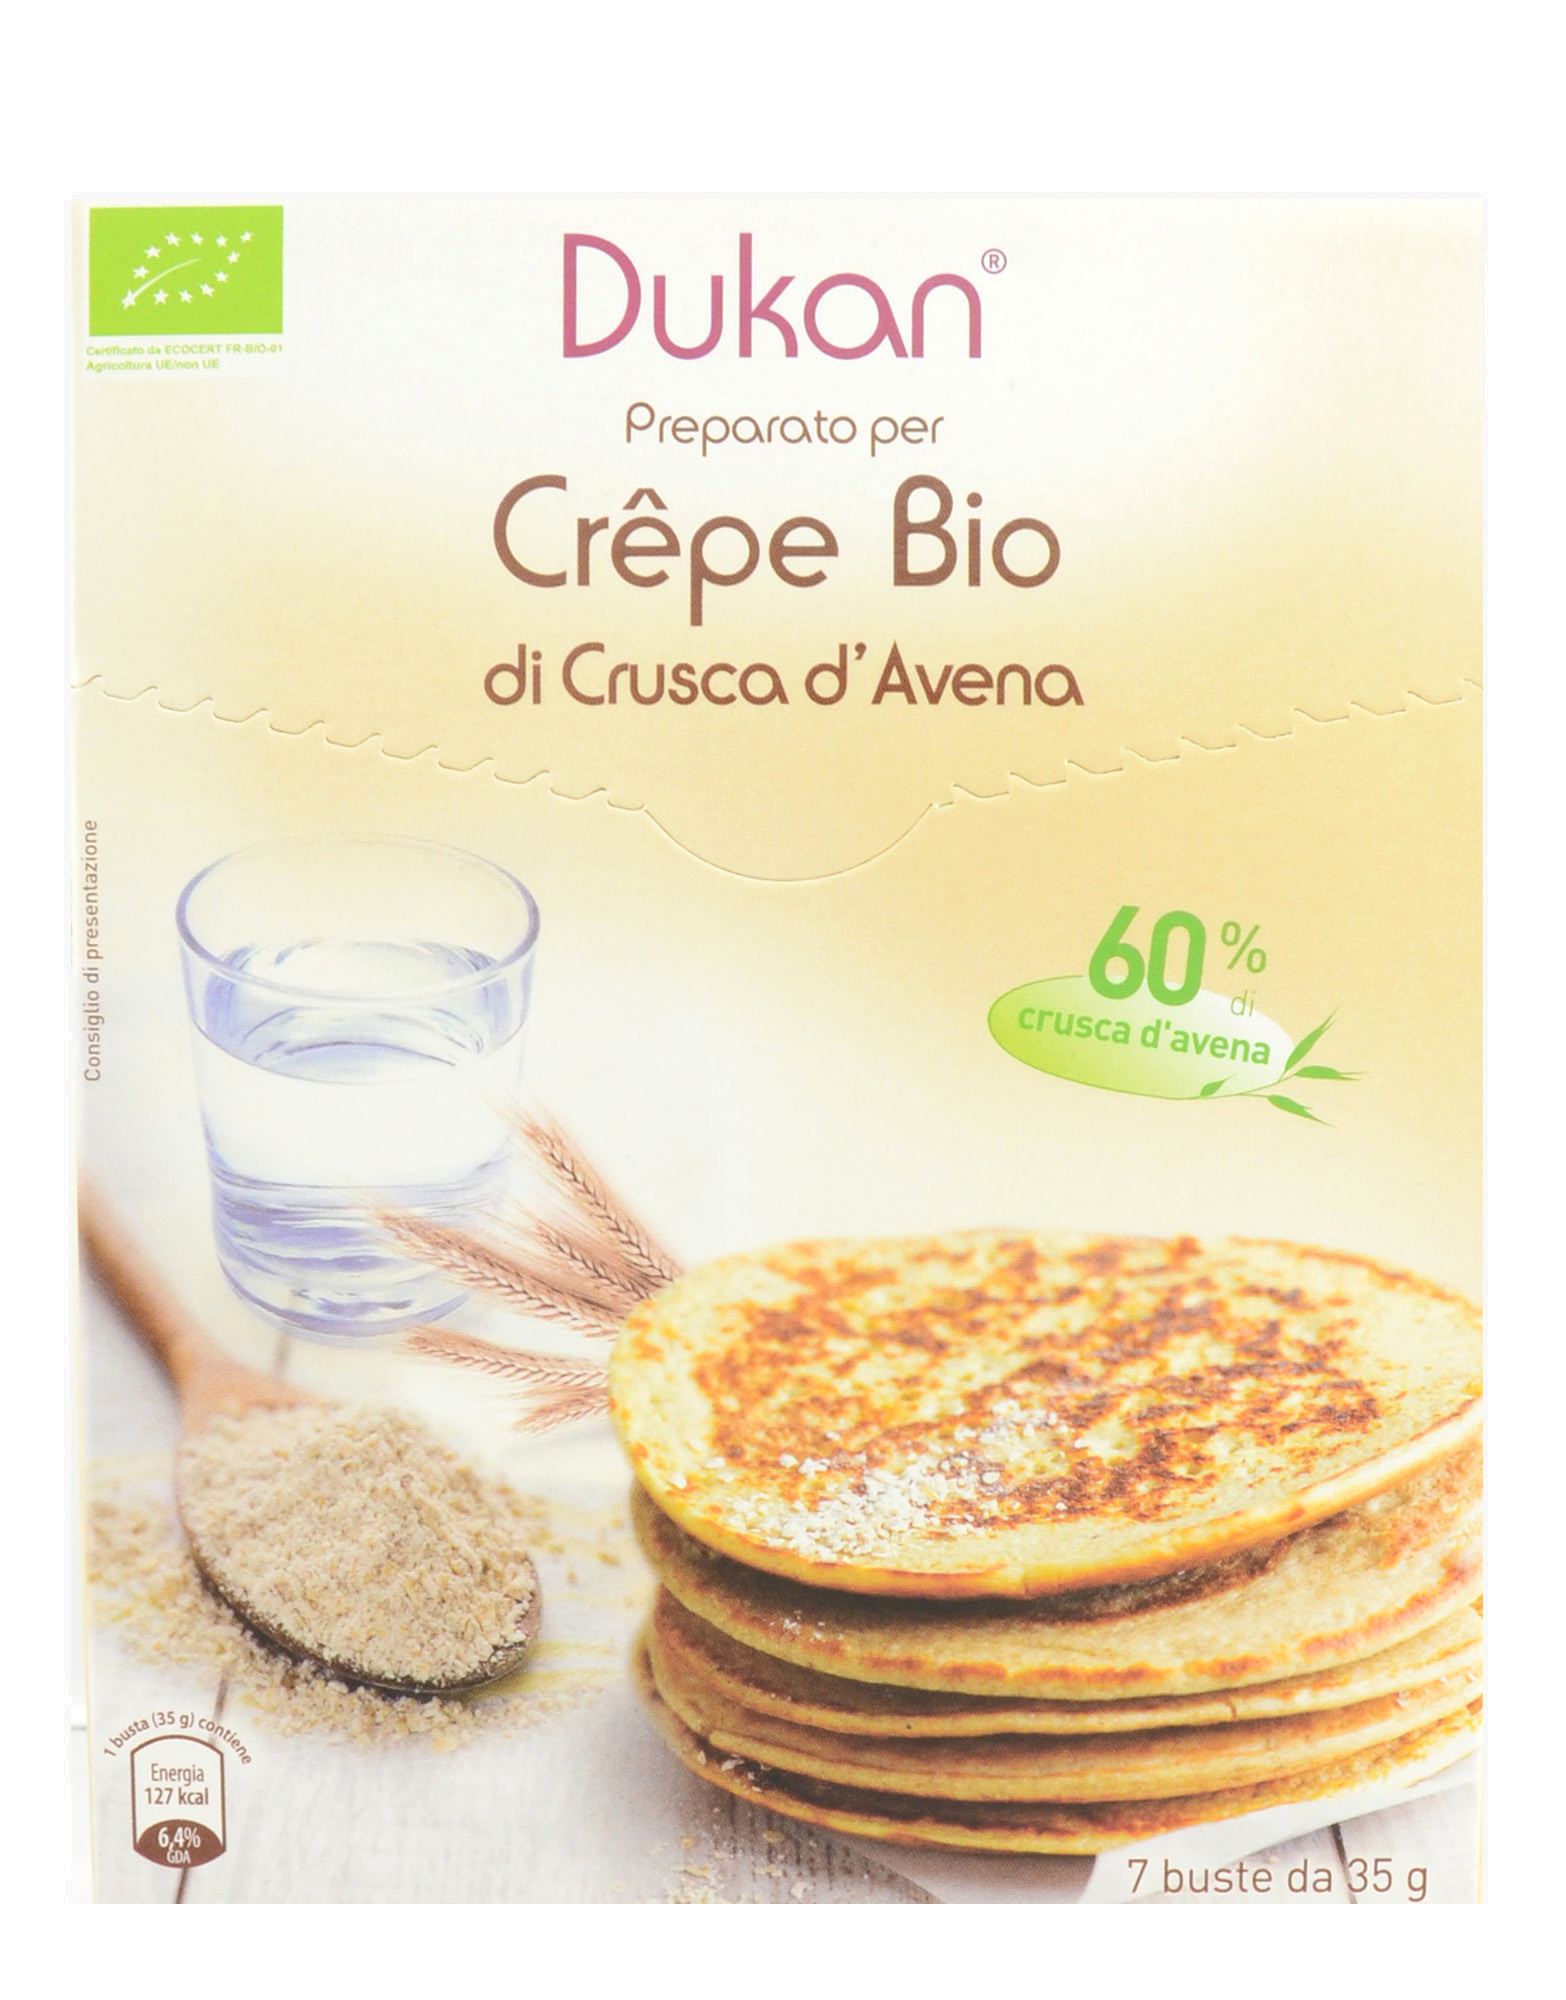 Crepe Bio di Crusca d'Avena di Dukan, 7 buste da 35 grammi